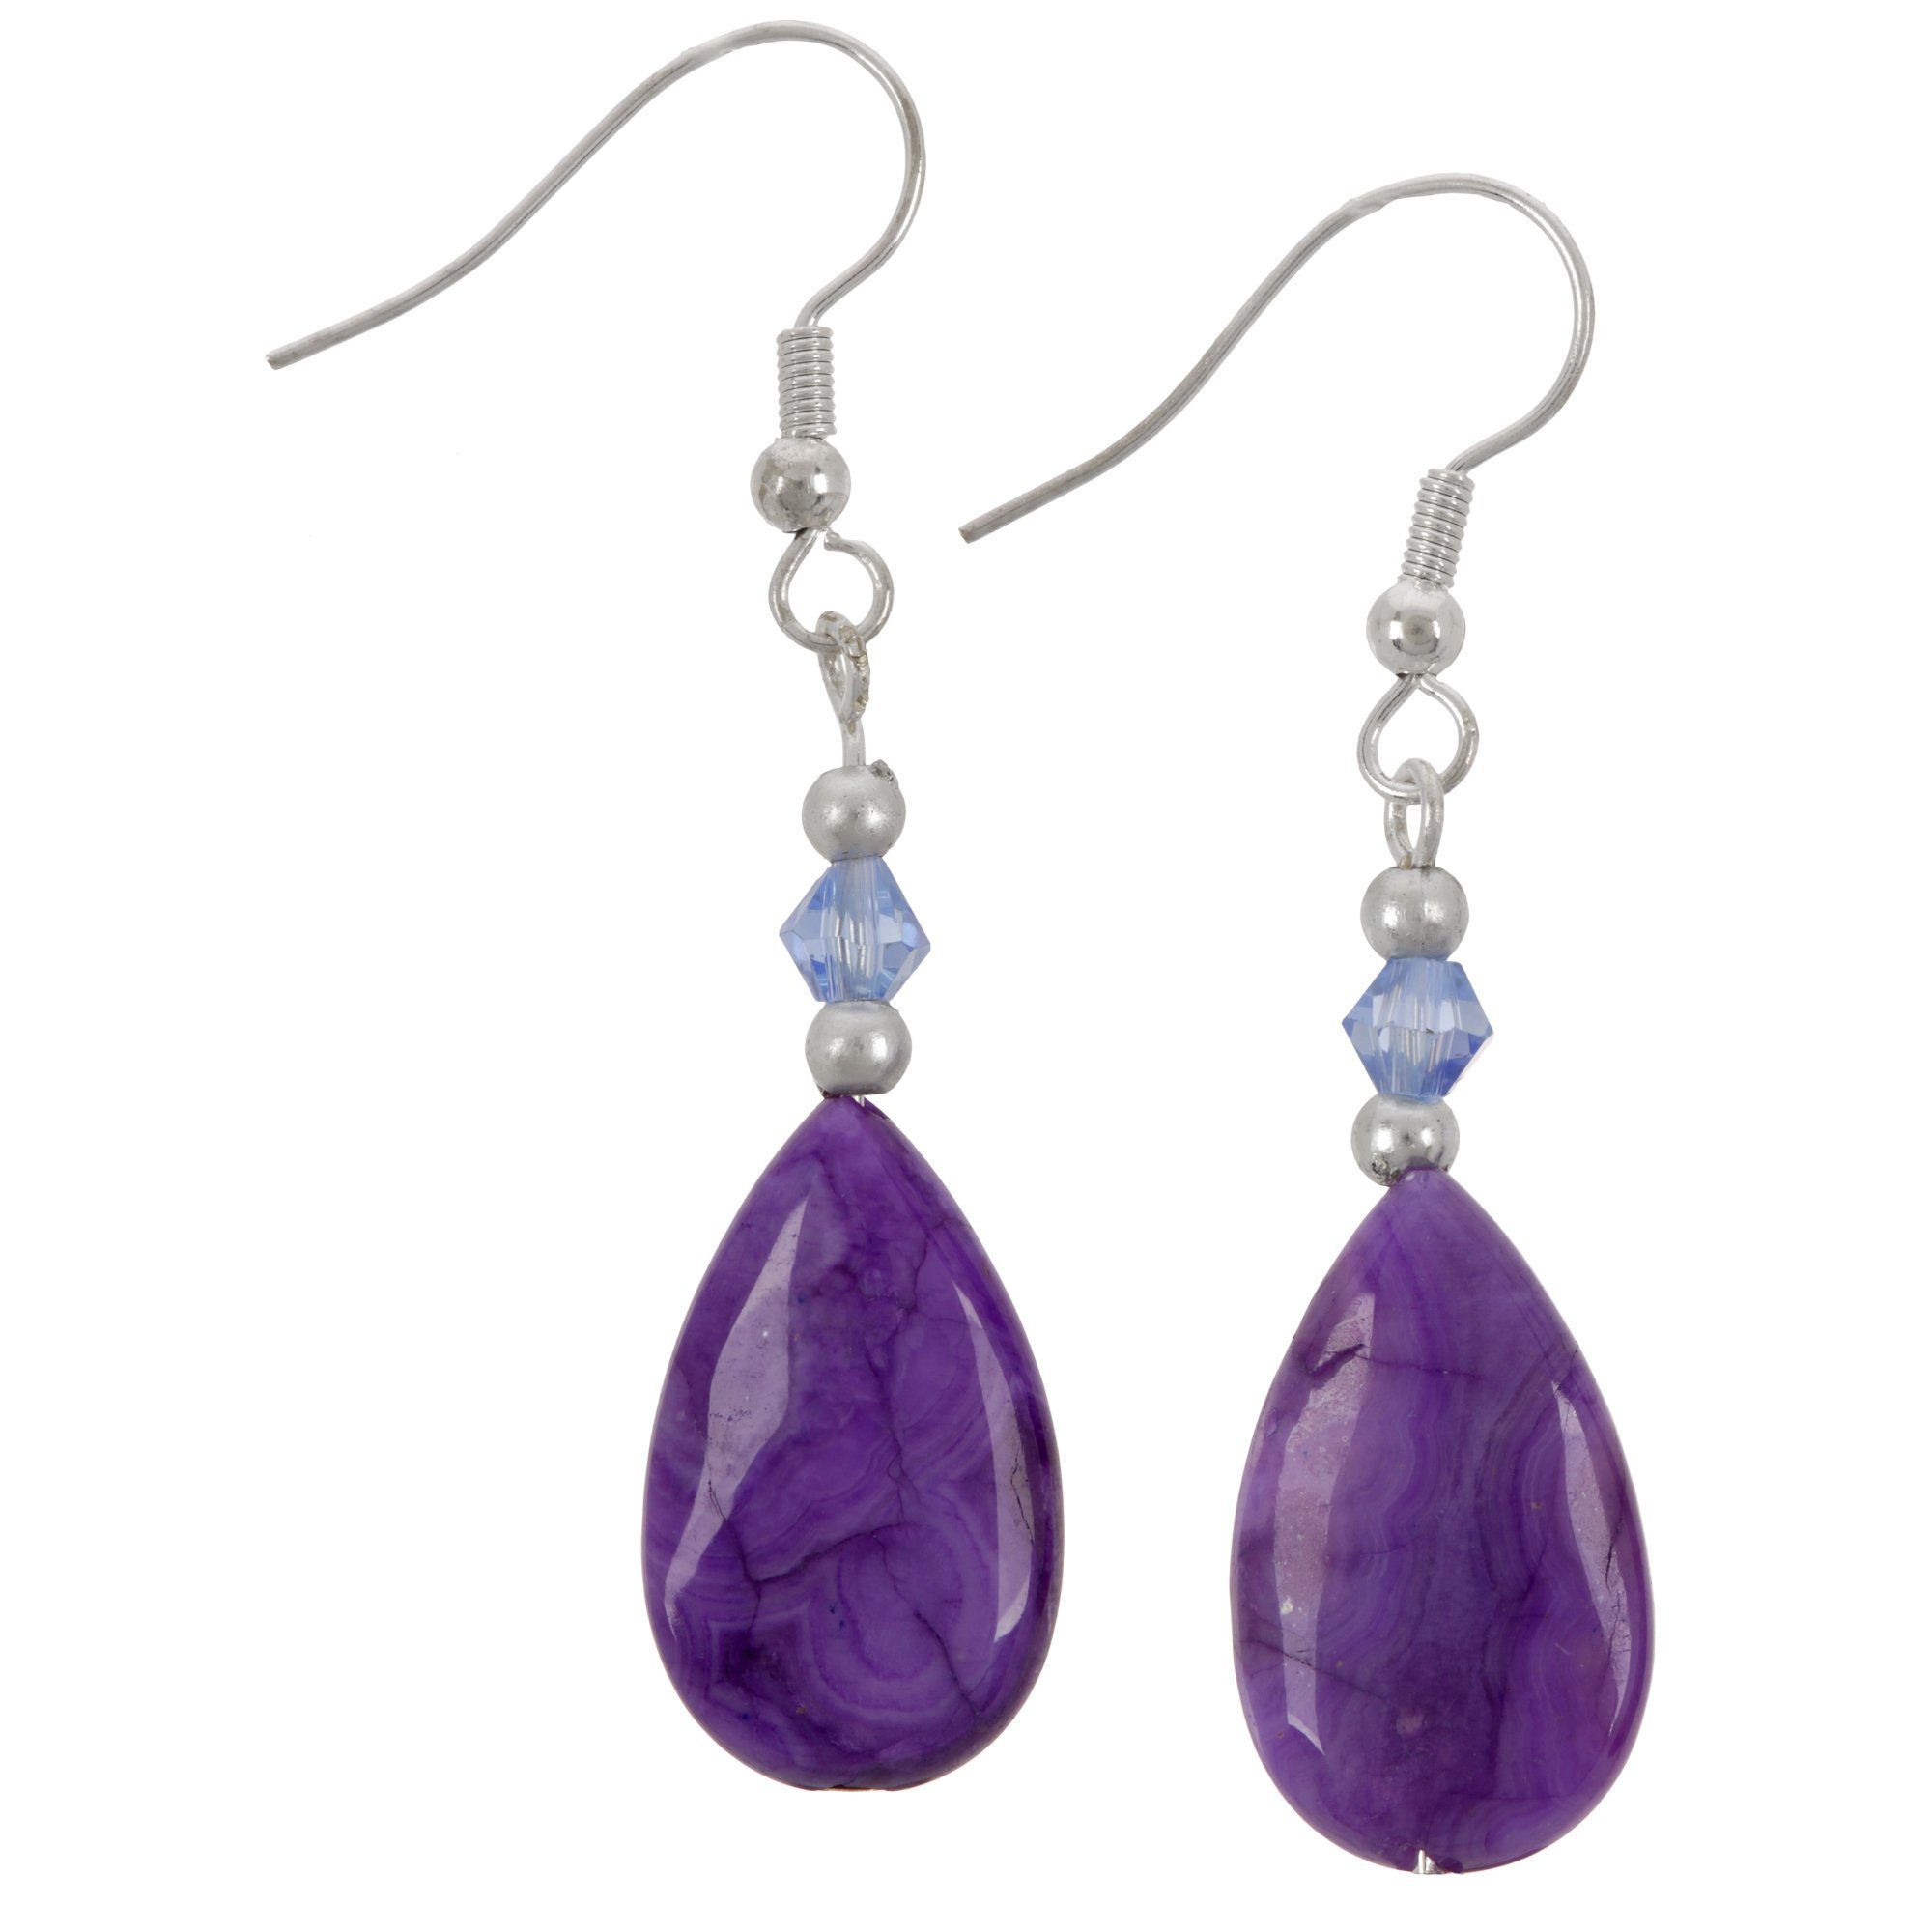 Stone Teardrop Earrings - Purple Crazy Lace Agate